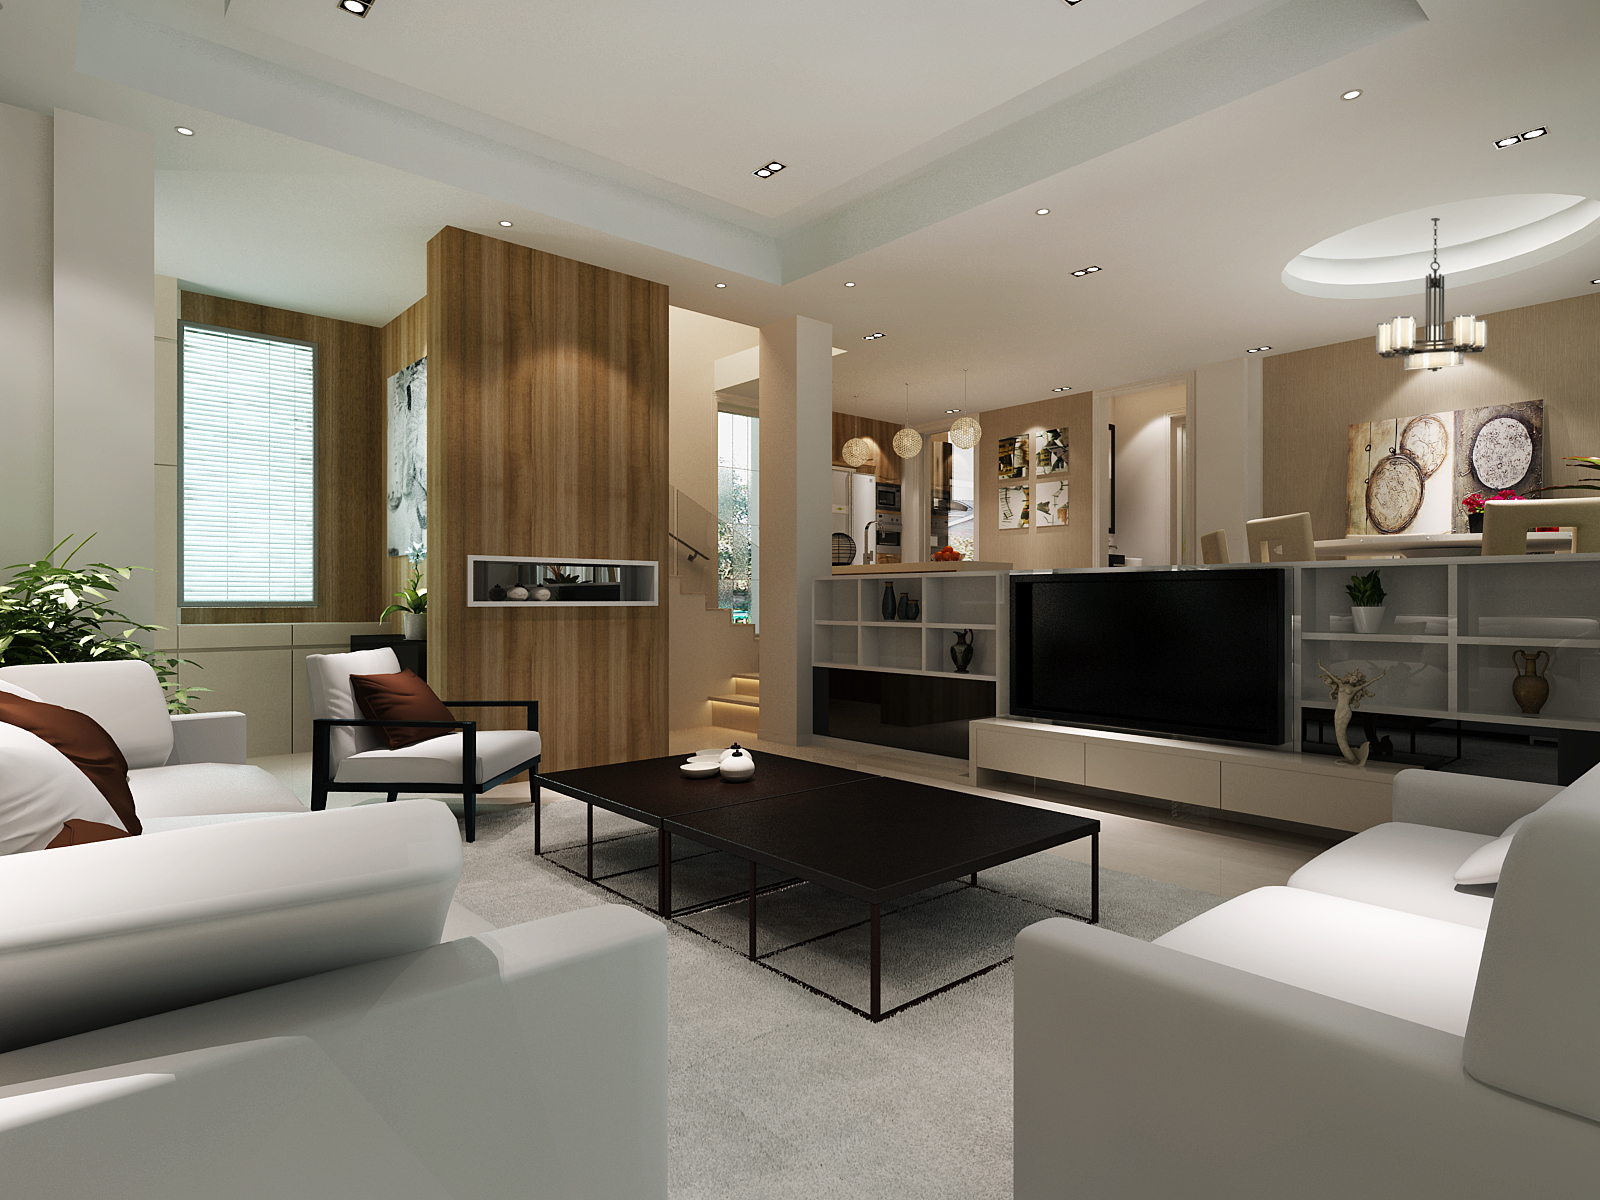 简约 别墅 客厅图片来自实创装饰上海公司在328平金地别墅现代简约装修的分享